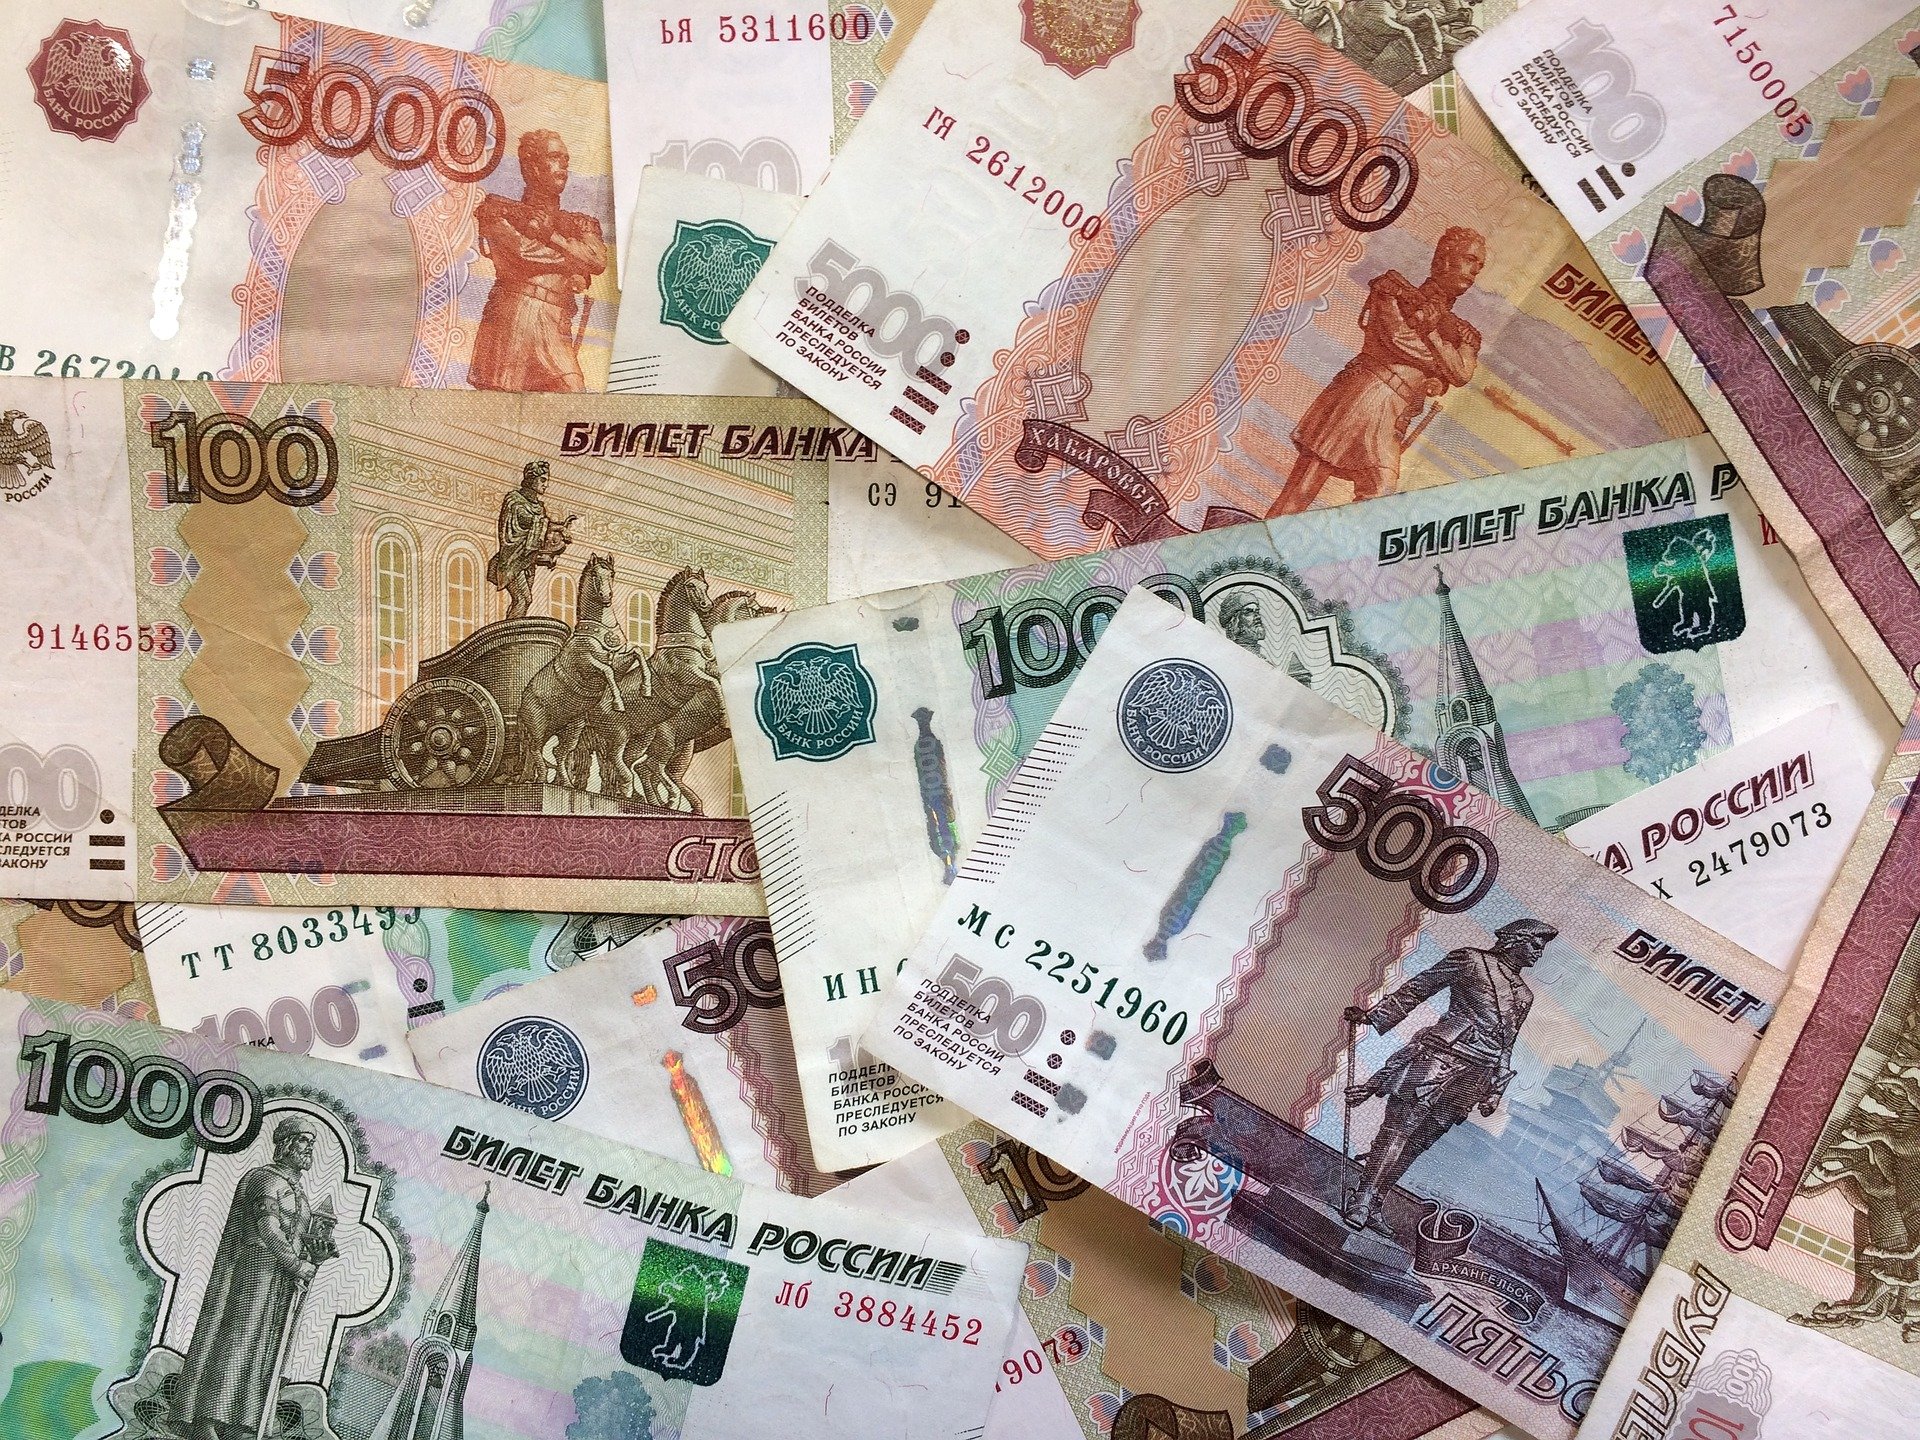 

Жителям Ижевска для счастья нужно 152 тысячи рублей в месяц

